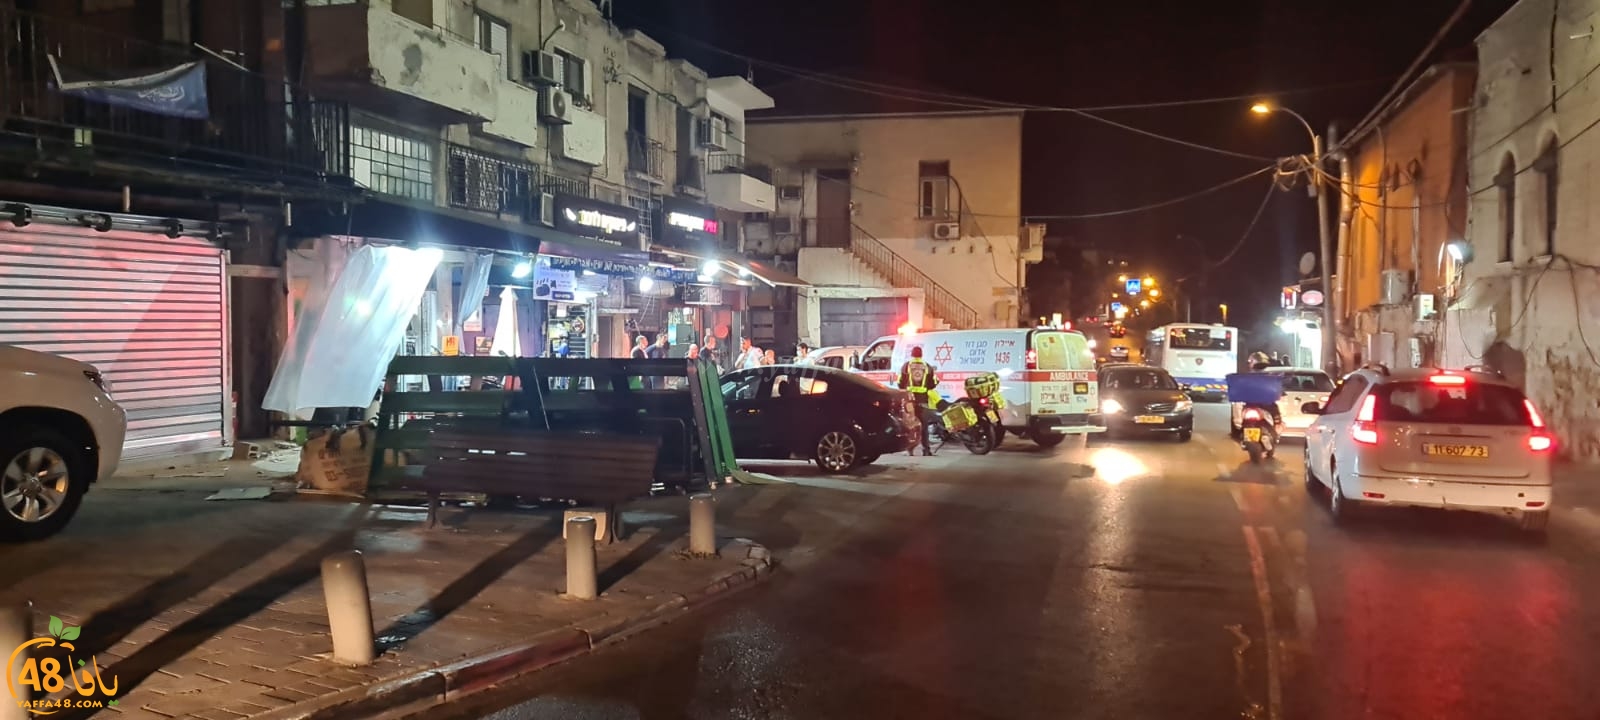  يافا: إطلاق نار في شارع ييفت دون اصابات والشرطة تُغلق الشارع